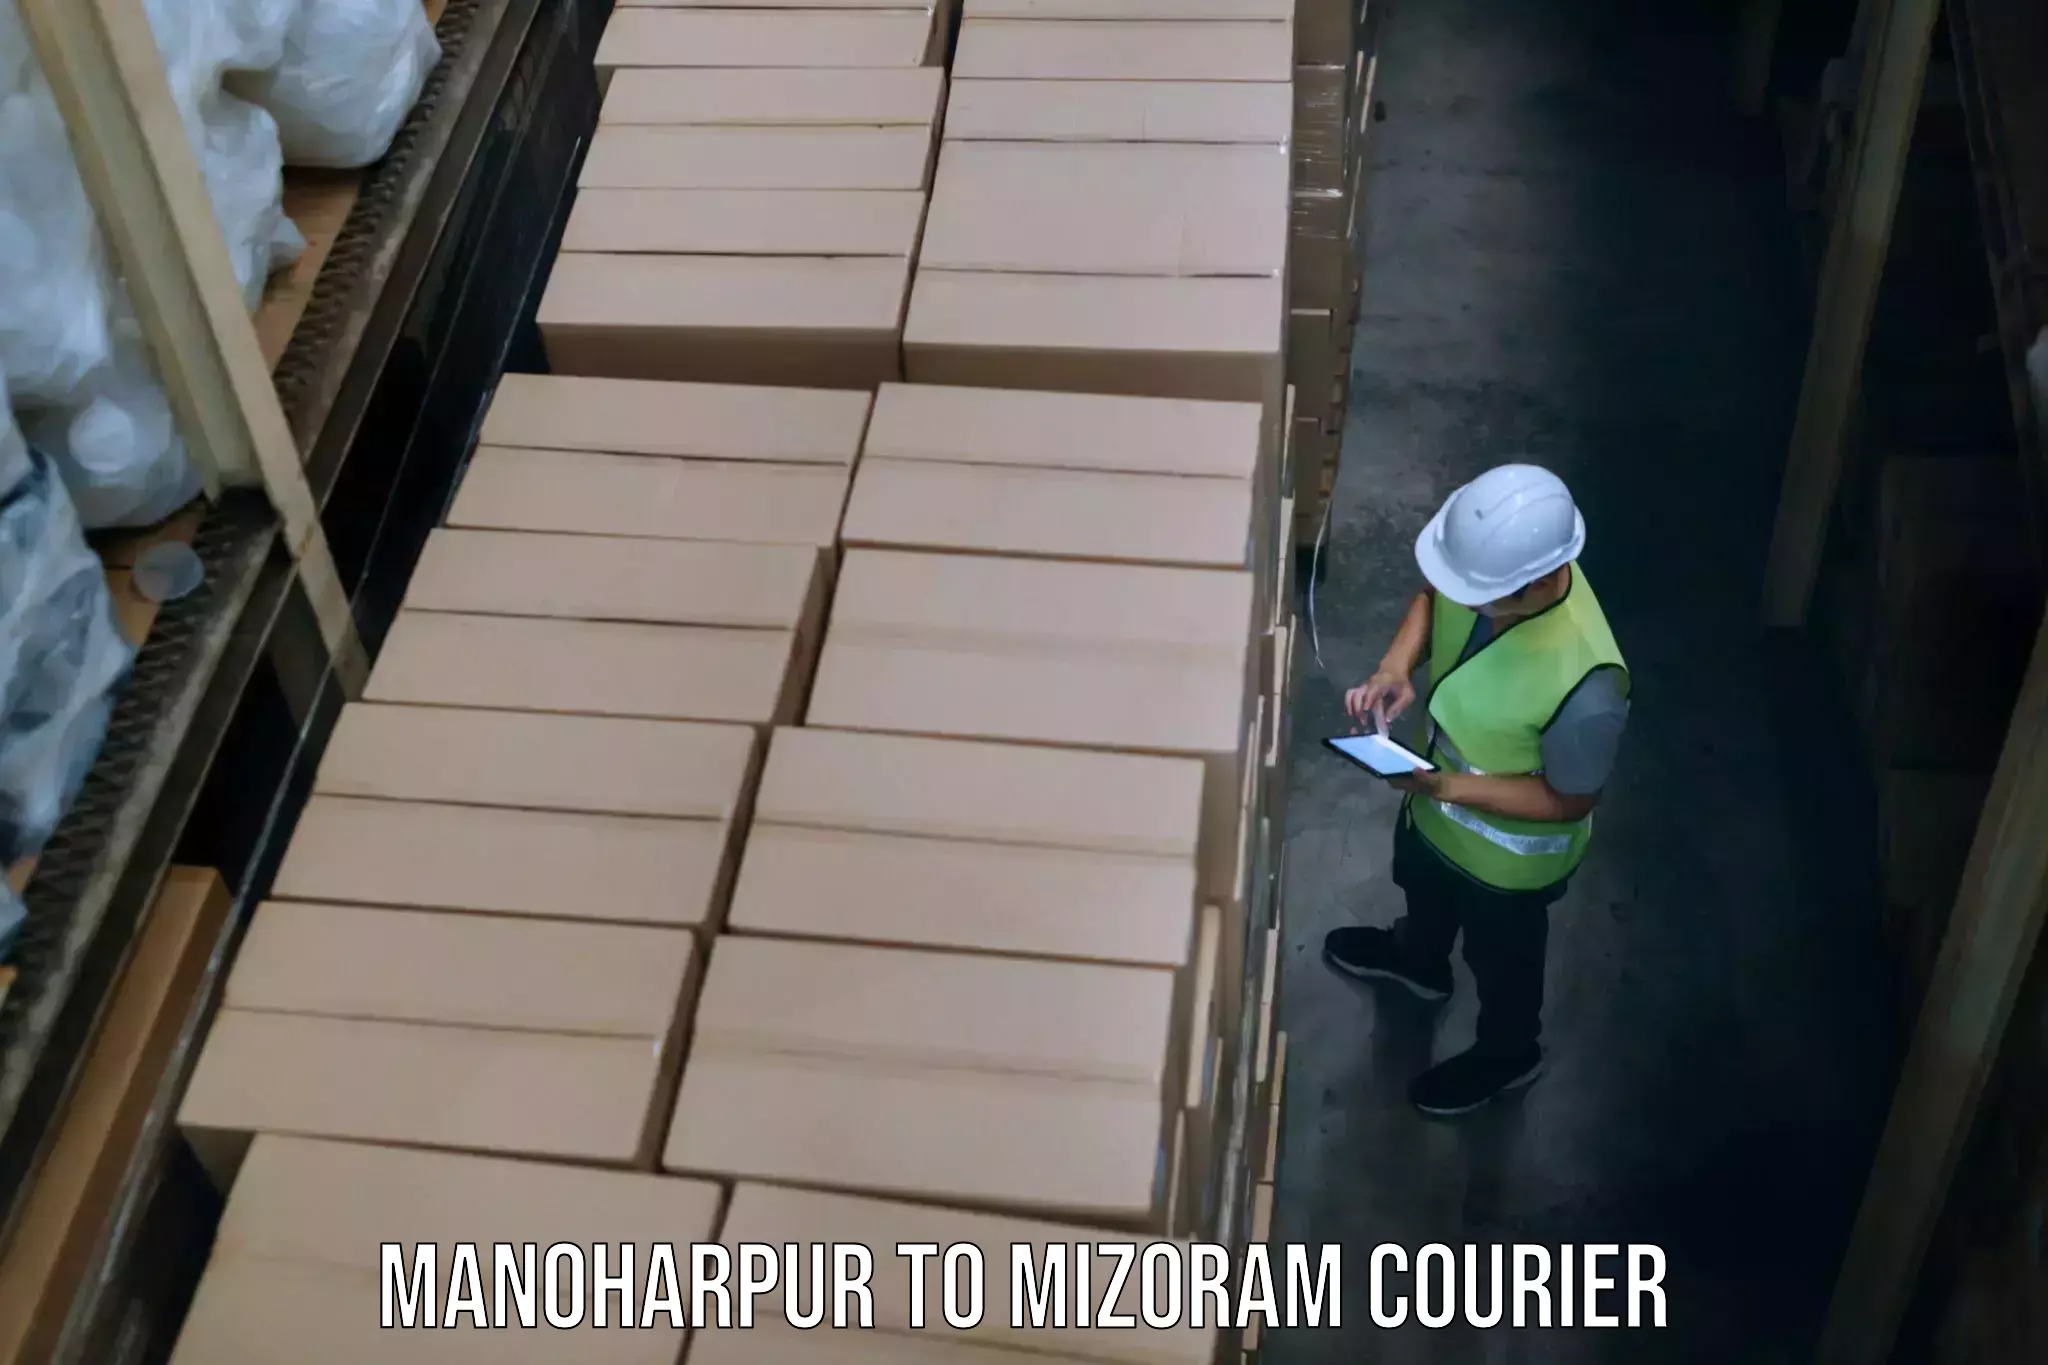 Baggage shipping service Manoharpur to Mizoram